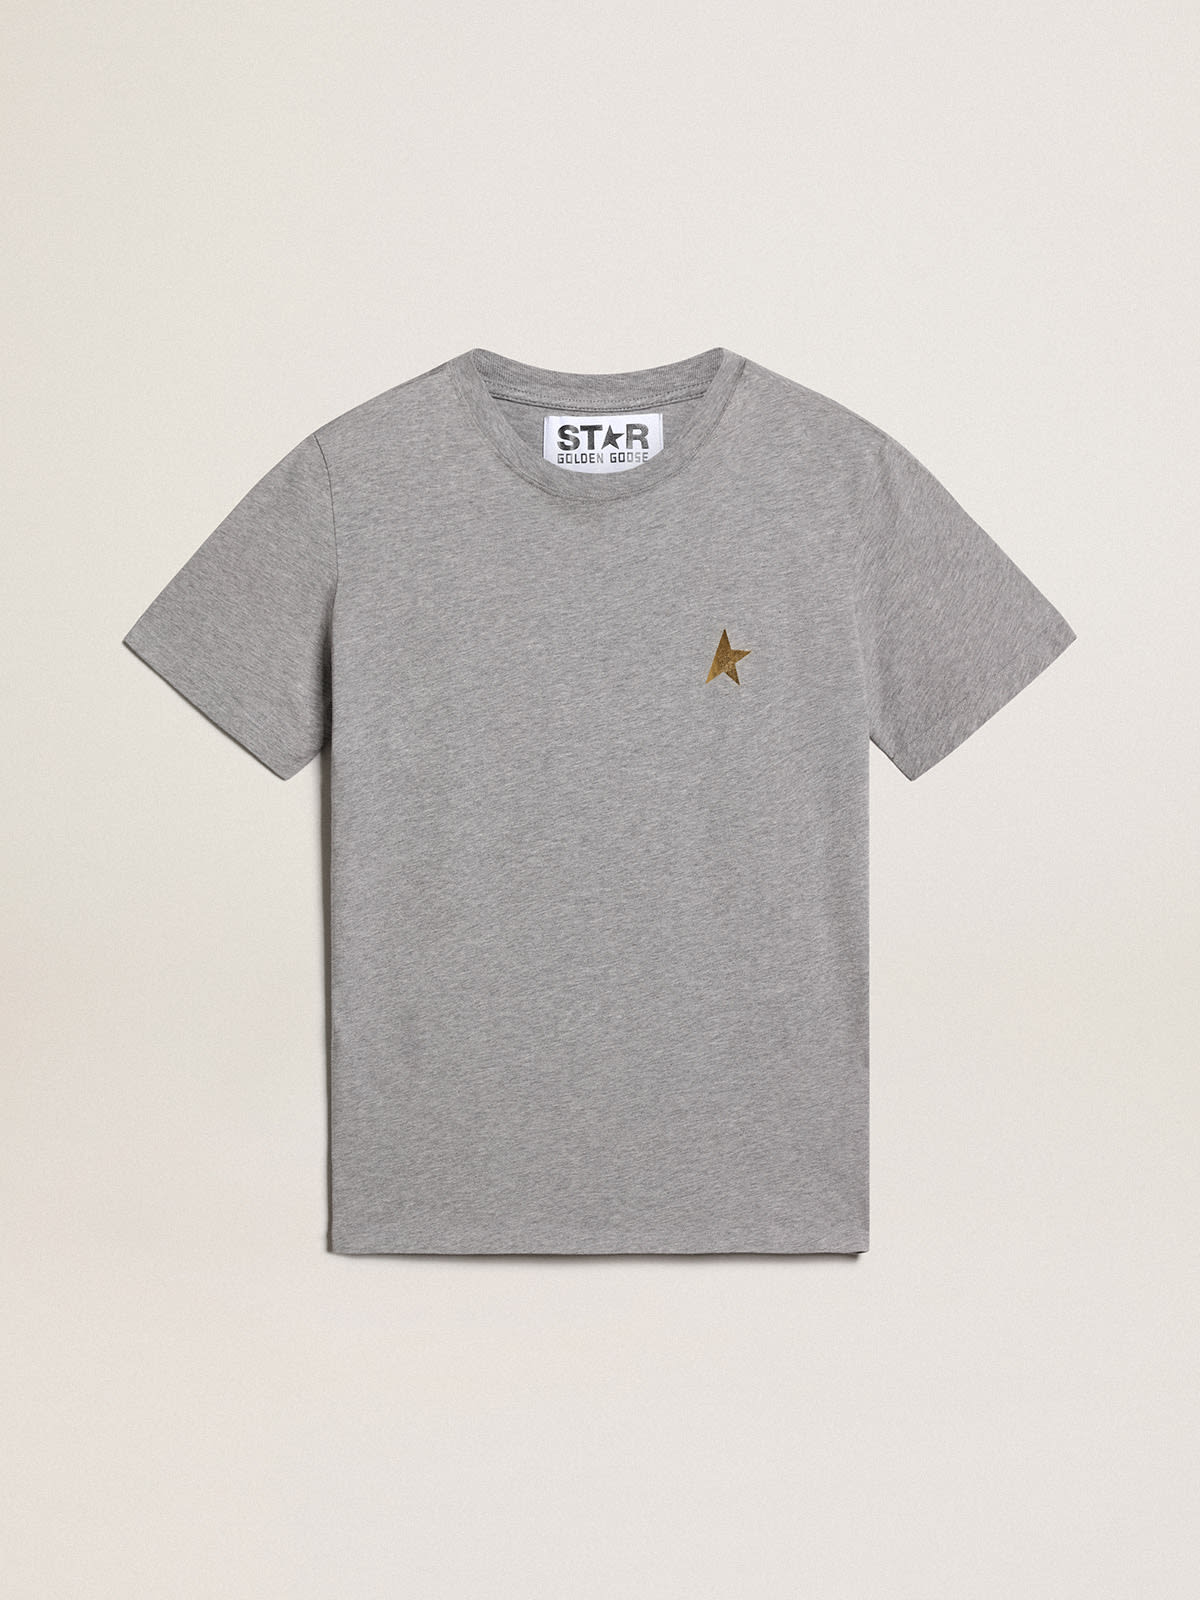 Golden Goose - Camiseta Coleção Star cinza mescla com estrela dourada em contraste na frente in 